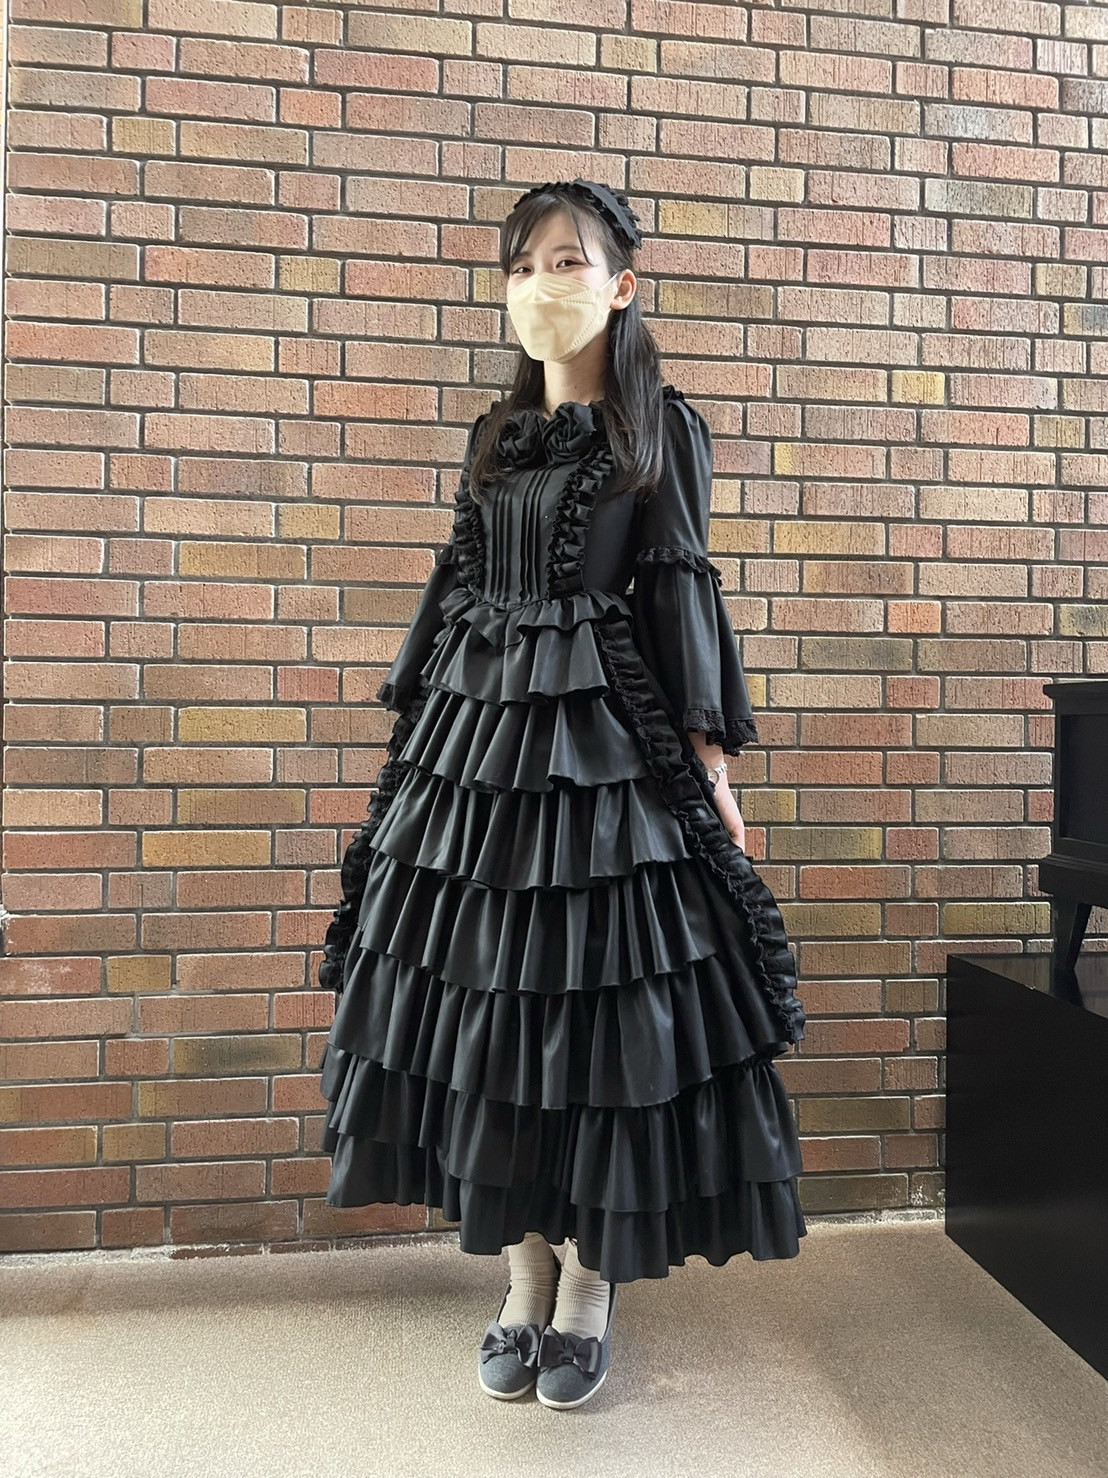 愛知県一宮市のロリータファッション×伝統の織物産地(尾州毛織物 